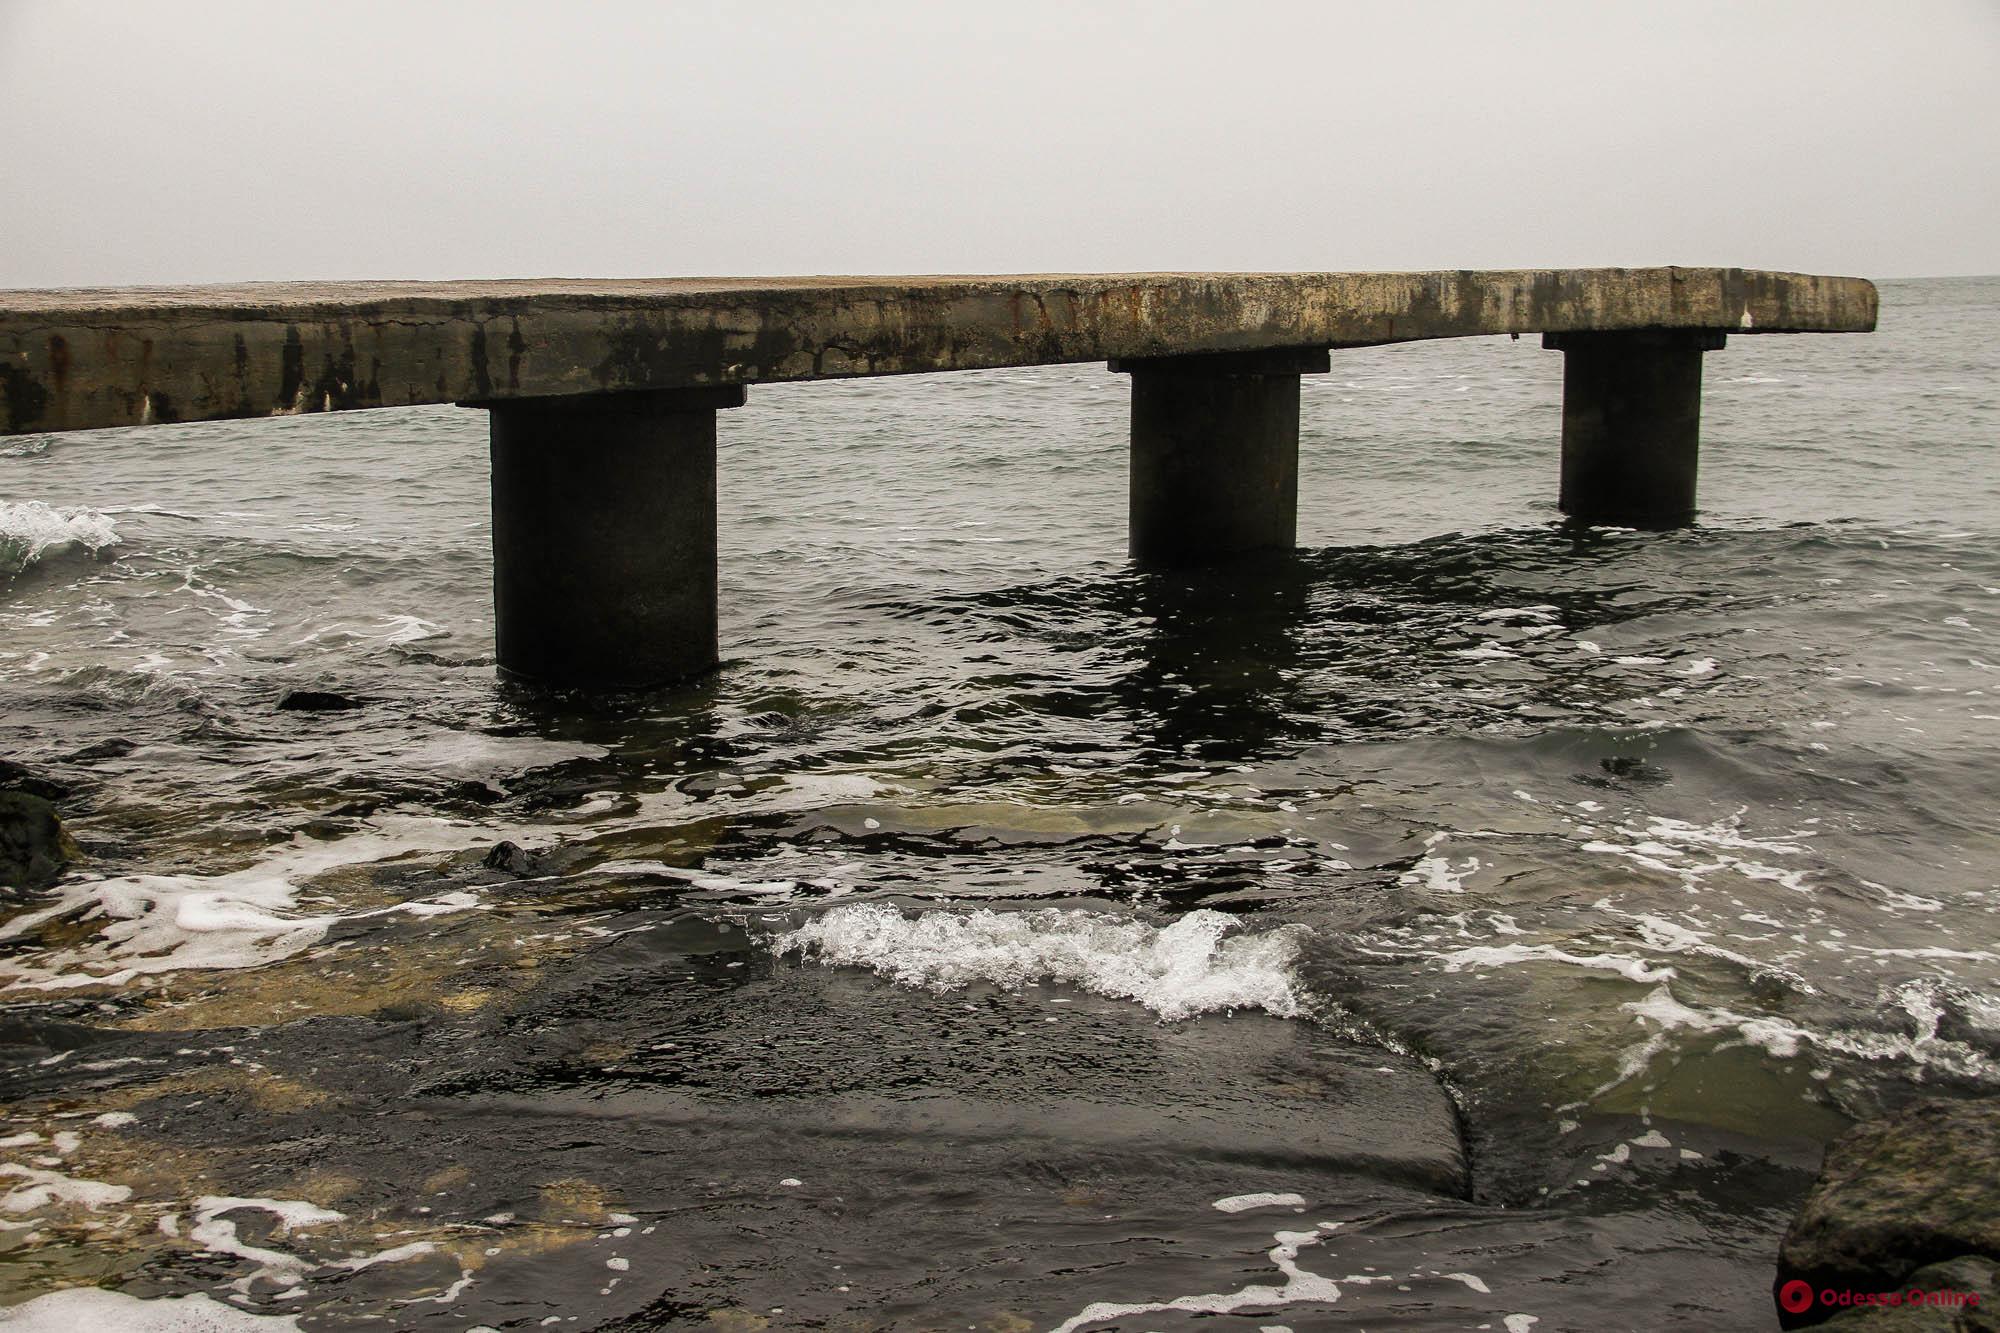 Море и ржавчина: фотопрогулка по побережью в районе Дачи Ковалевского